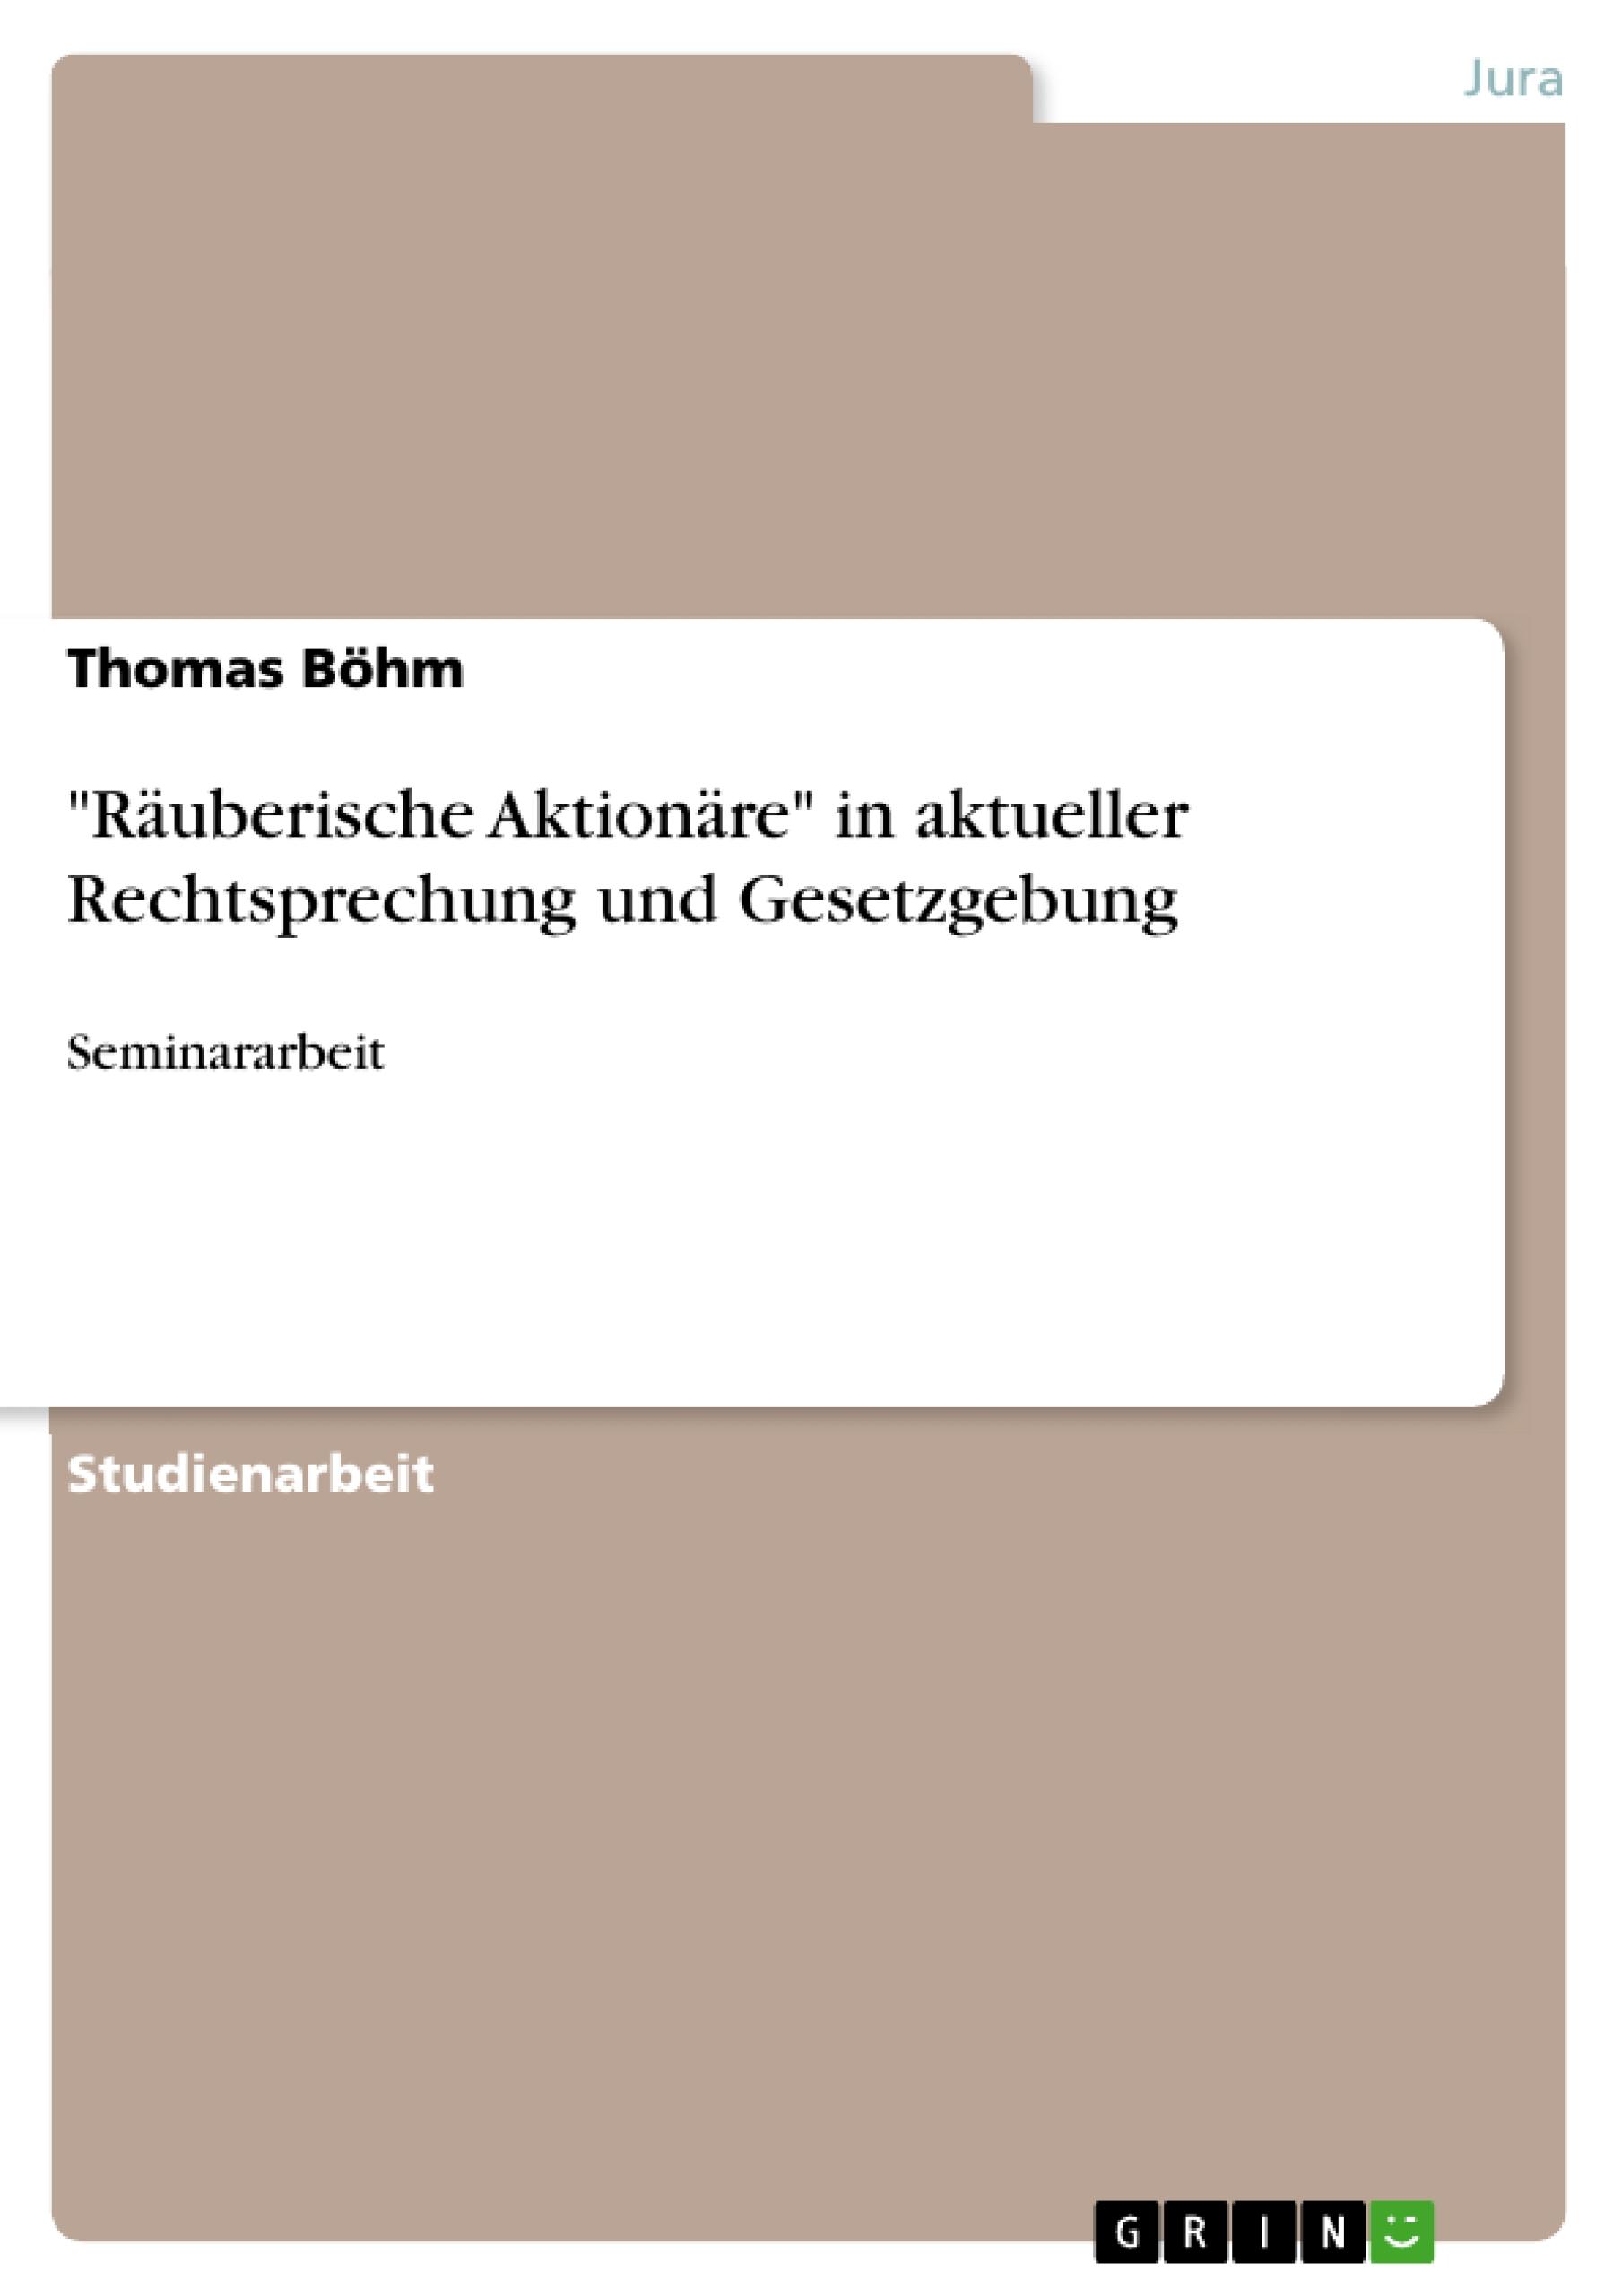 Raeuberische Aktionaere  in aktueller Rechtsprechung und Gesetzgebung - Boehm, Thomas